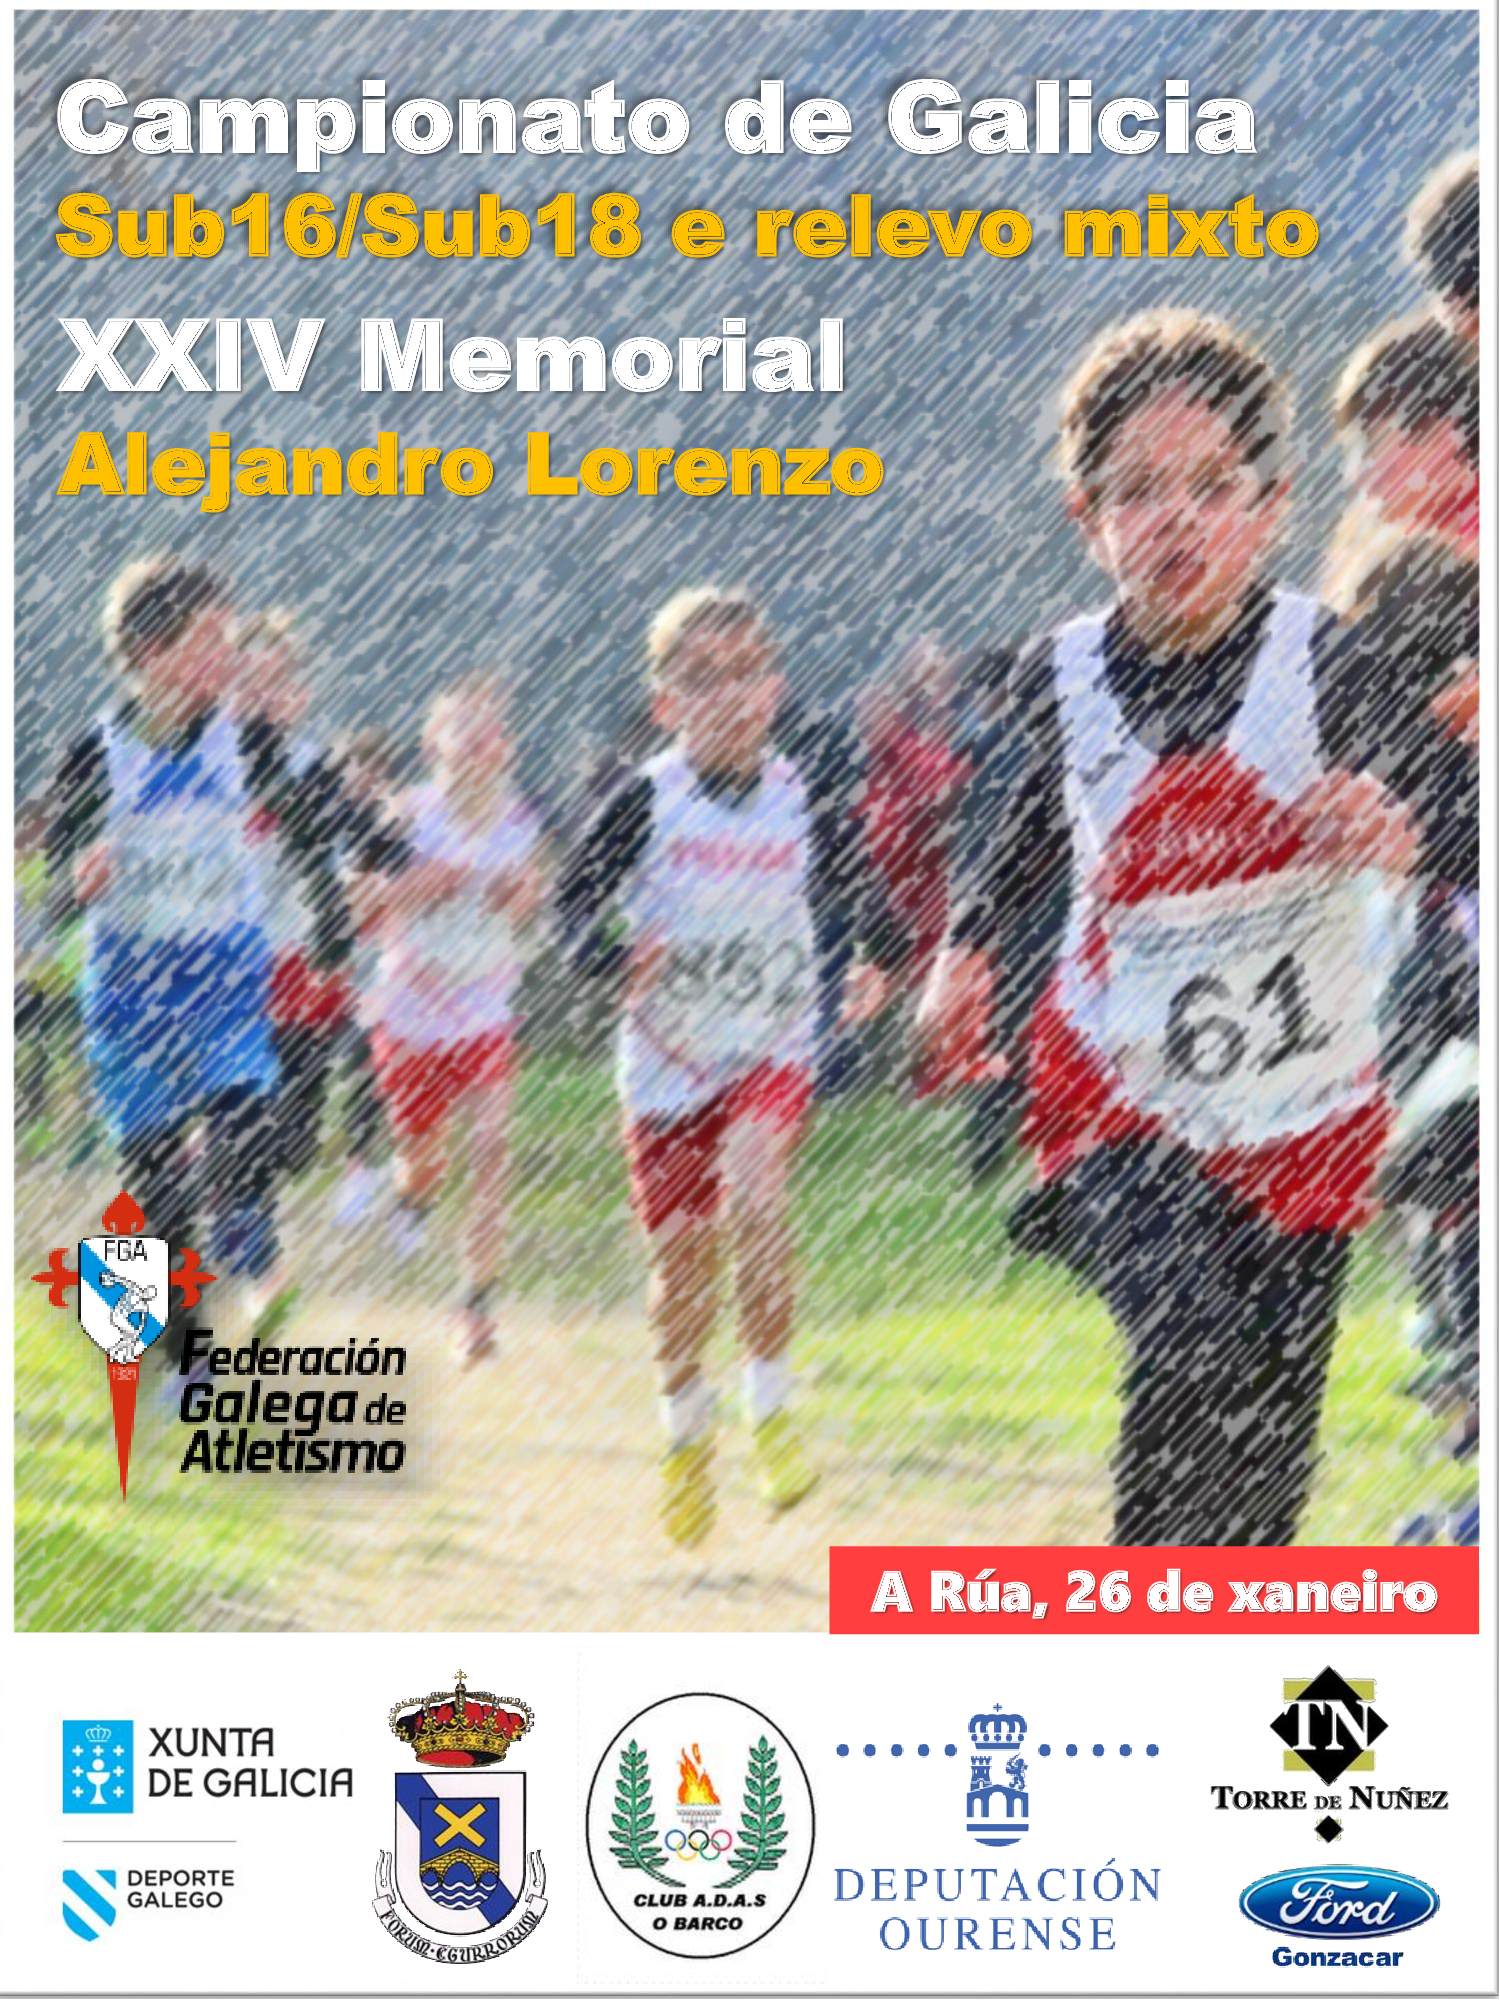 XXIV Memorial “Alejandro Lorenzo” – Campionato de Galicia de Campo a Través de Menores 2020